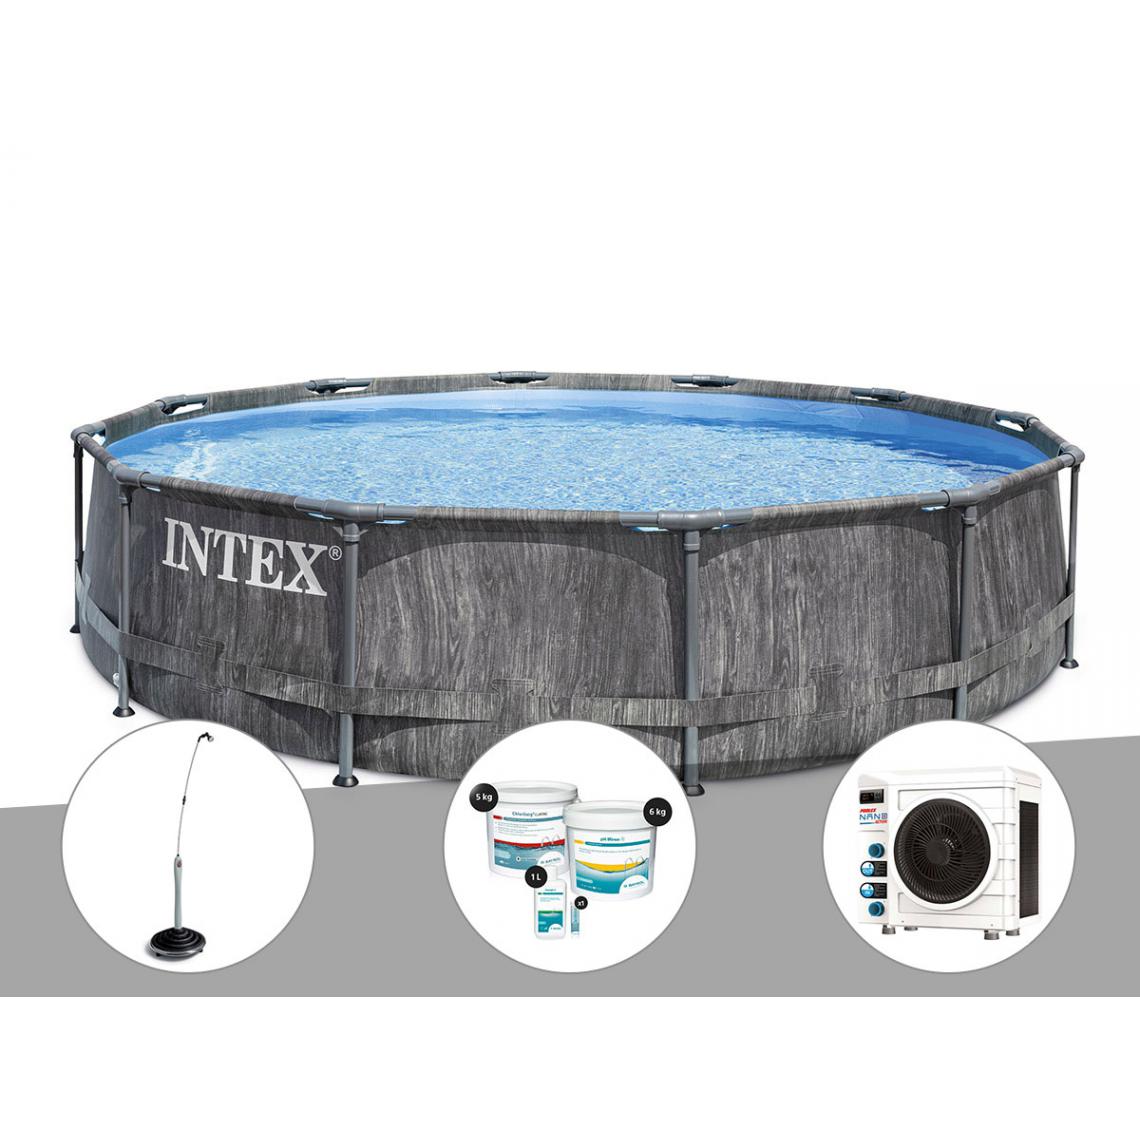 Intex - Kit piscine tubulaire Intex Baltik ronde 5,49 x 1,22 m + Douche solaire + Kit de traitement au chlore + Pompe à chaleur - Piscine Tubulaire